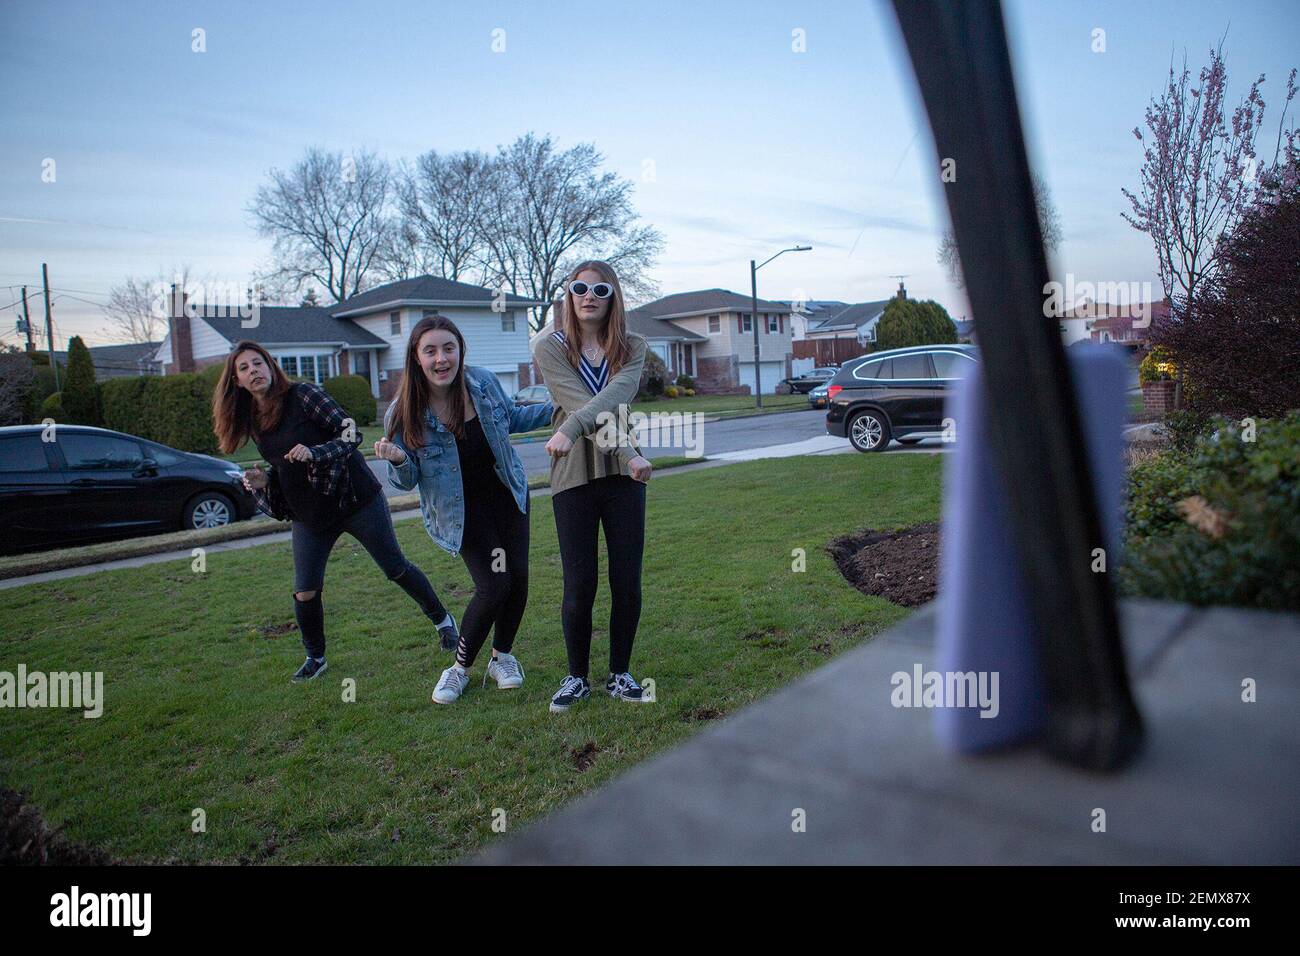 Jennifer Gutterson de Plainview, izquierda, e hijas, Alexa, centro, 16, y Ava, de 13 años, filmar un video para la aplicación Tiktok fuera de su casa el 17 de abril de 2019. (Foto de Shelby Knowles/Newsday/TNS/Sipa USA) Foto de stock